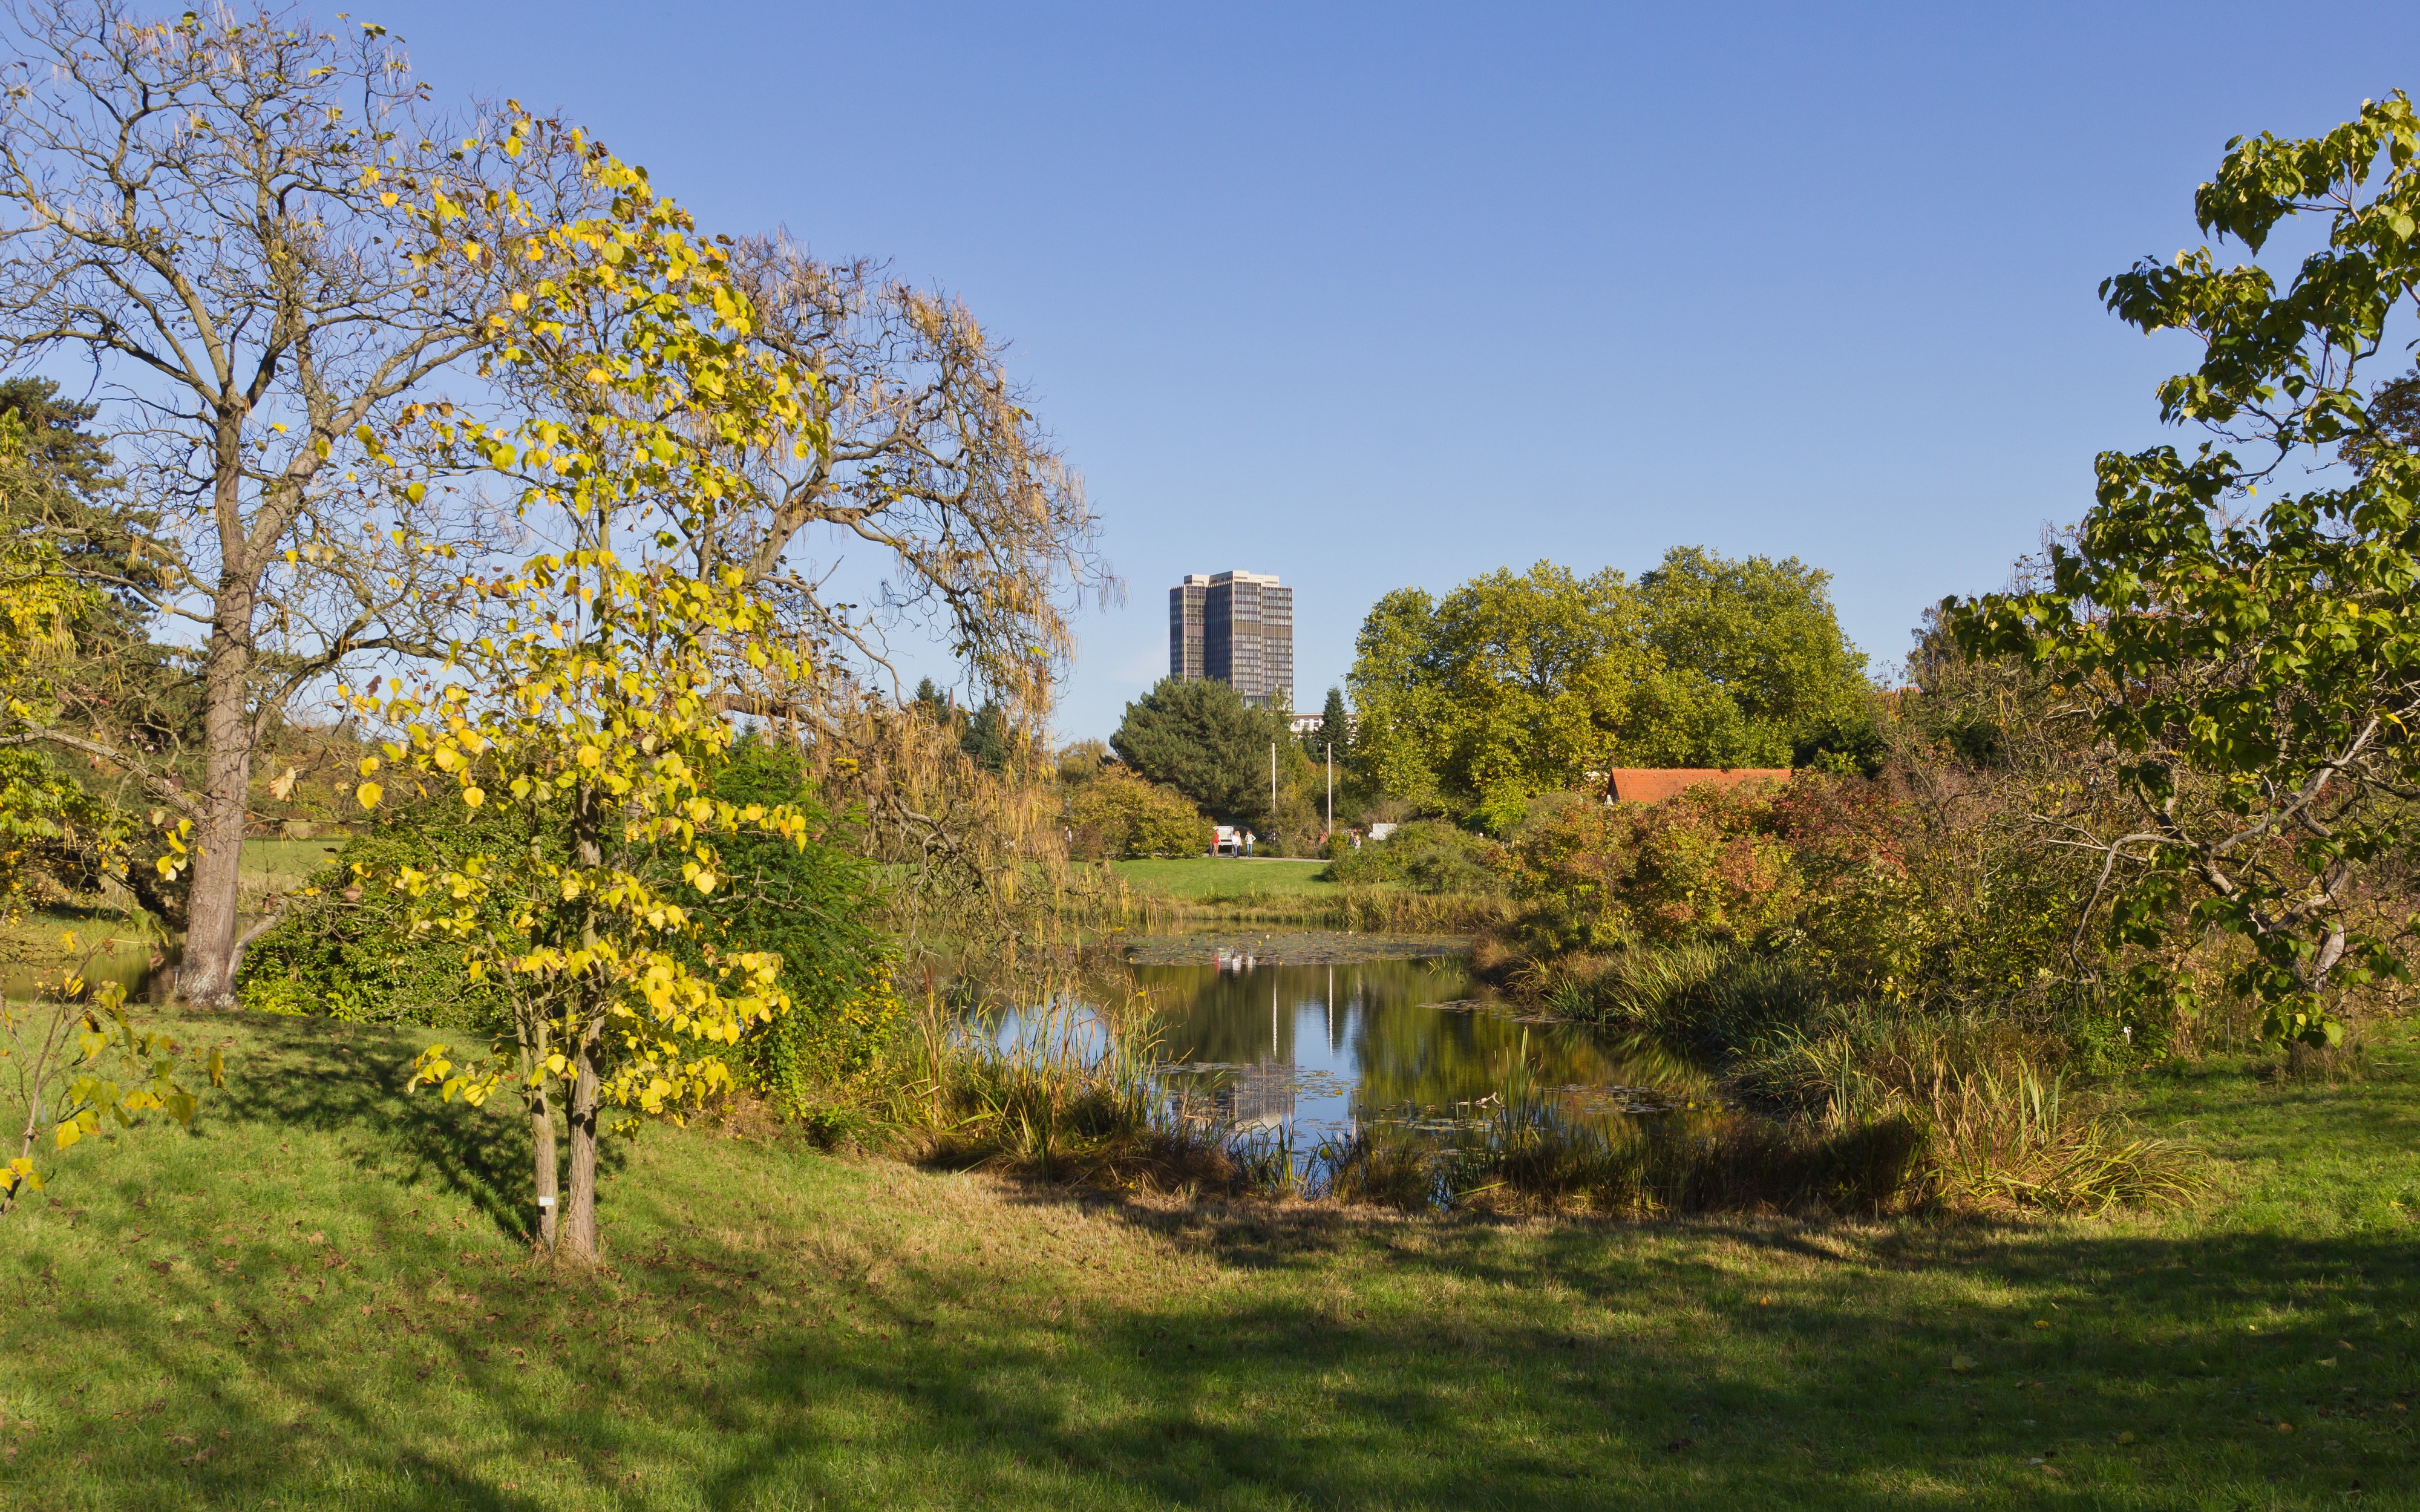 Botanischer Garten Berlin-Dahlem 10-2014 photo02 pond